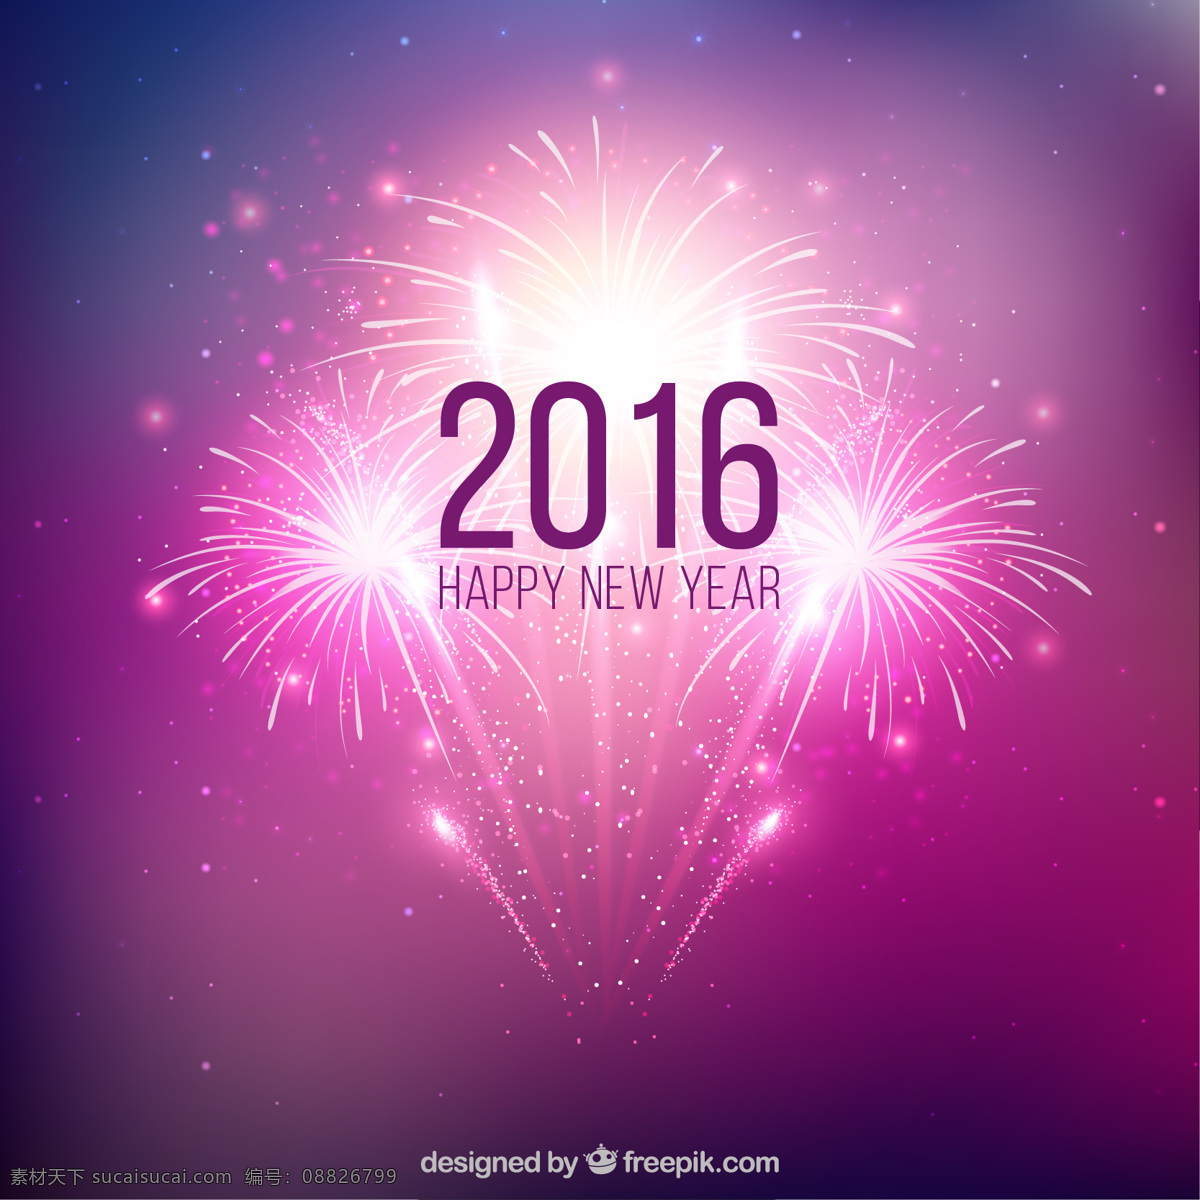 紫色 新年 焰火 背景 派对 抽象 新年快乐 新的一年 冬天 快乐 烟花 庆祝 新 活动 节日 2016 年 节日快乐 紫色背景